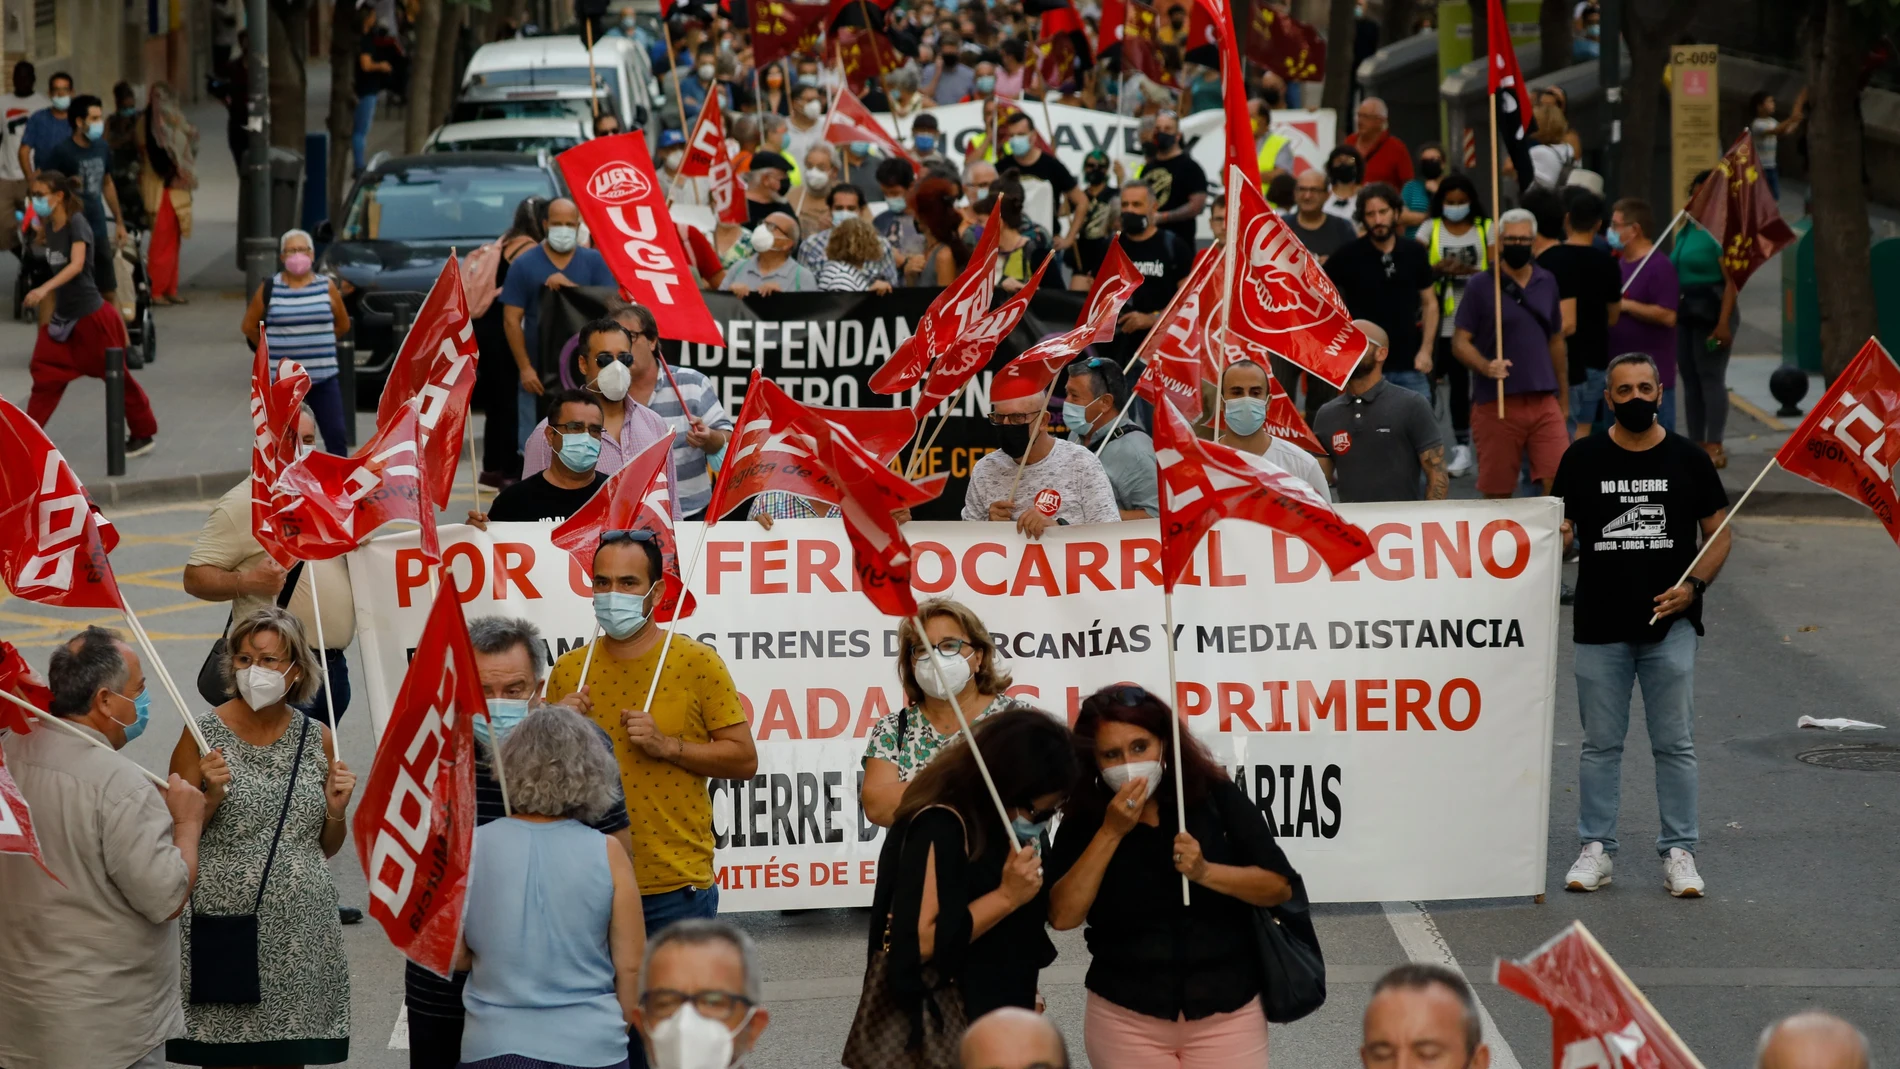 La plataforma en defensa del ferrocarril de la Región de Murcia y los comités de empresa de Adif y Renfe han convocado una manifestación en contra del cierre de la línea de cercanías de Murcia - Lorca-Águilas previsto para el próximo 1 de octubre